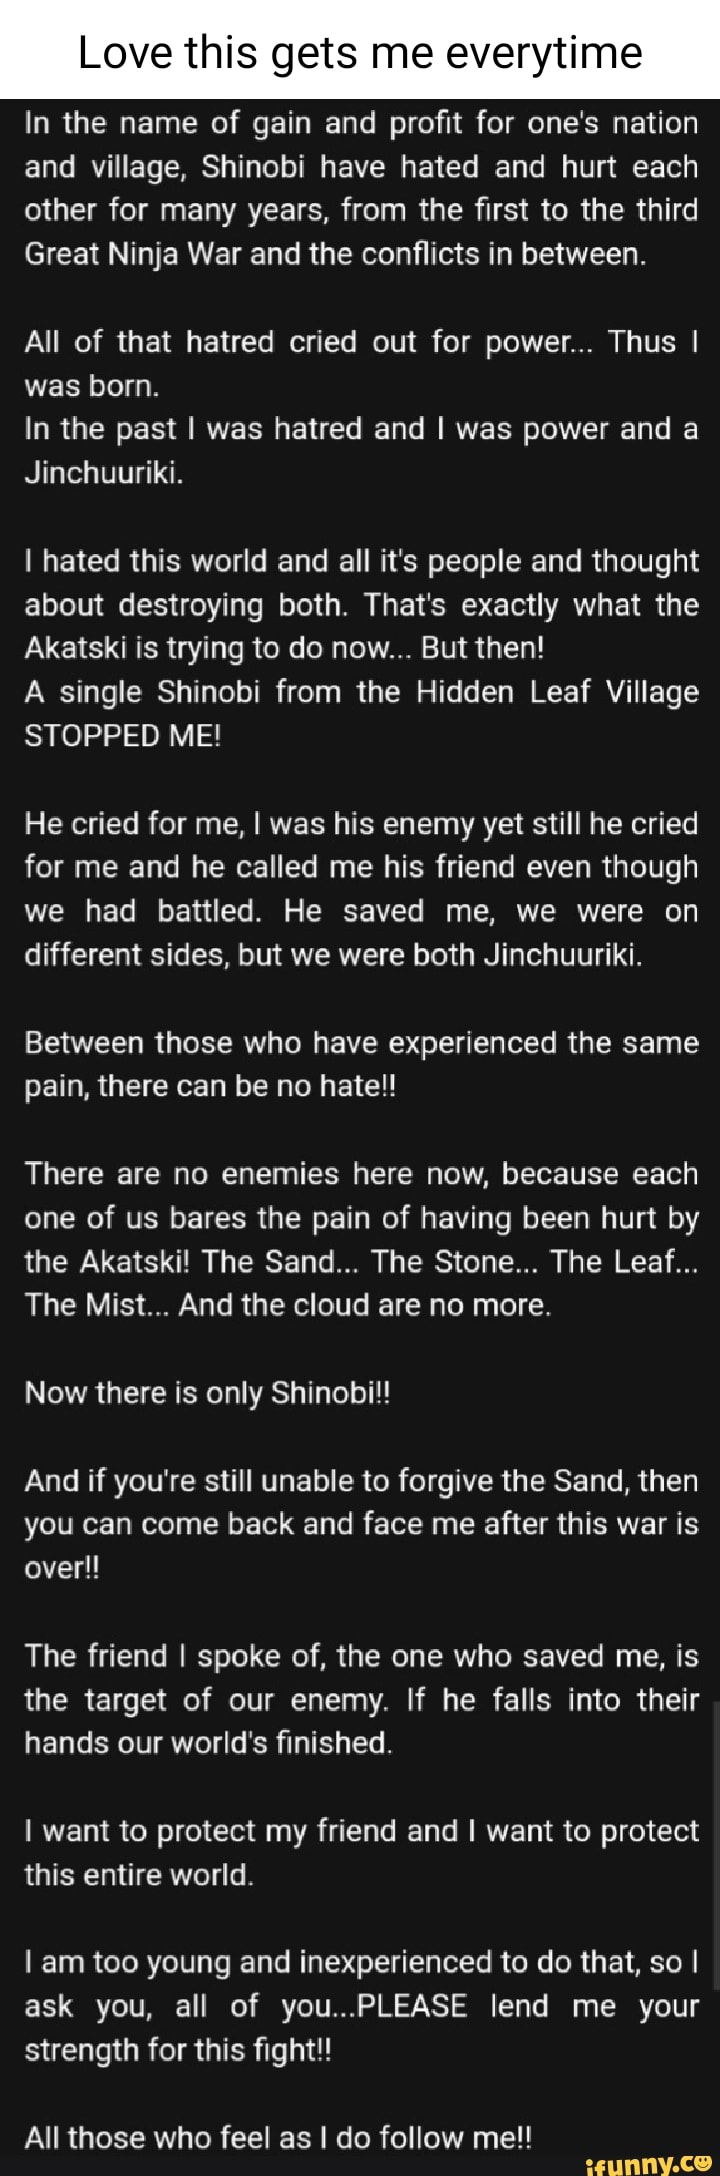 We the Shinobi